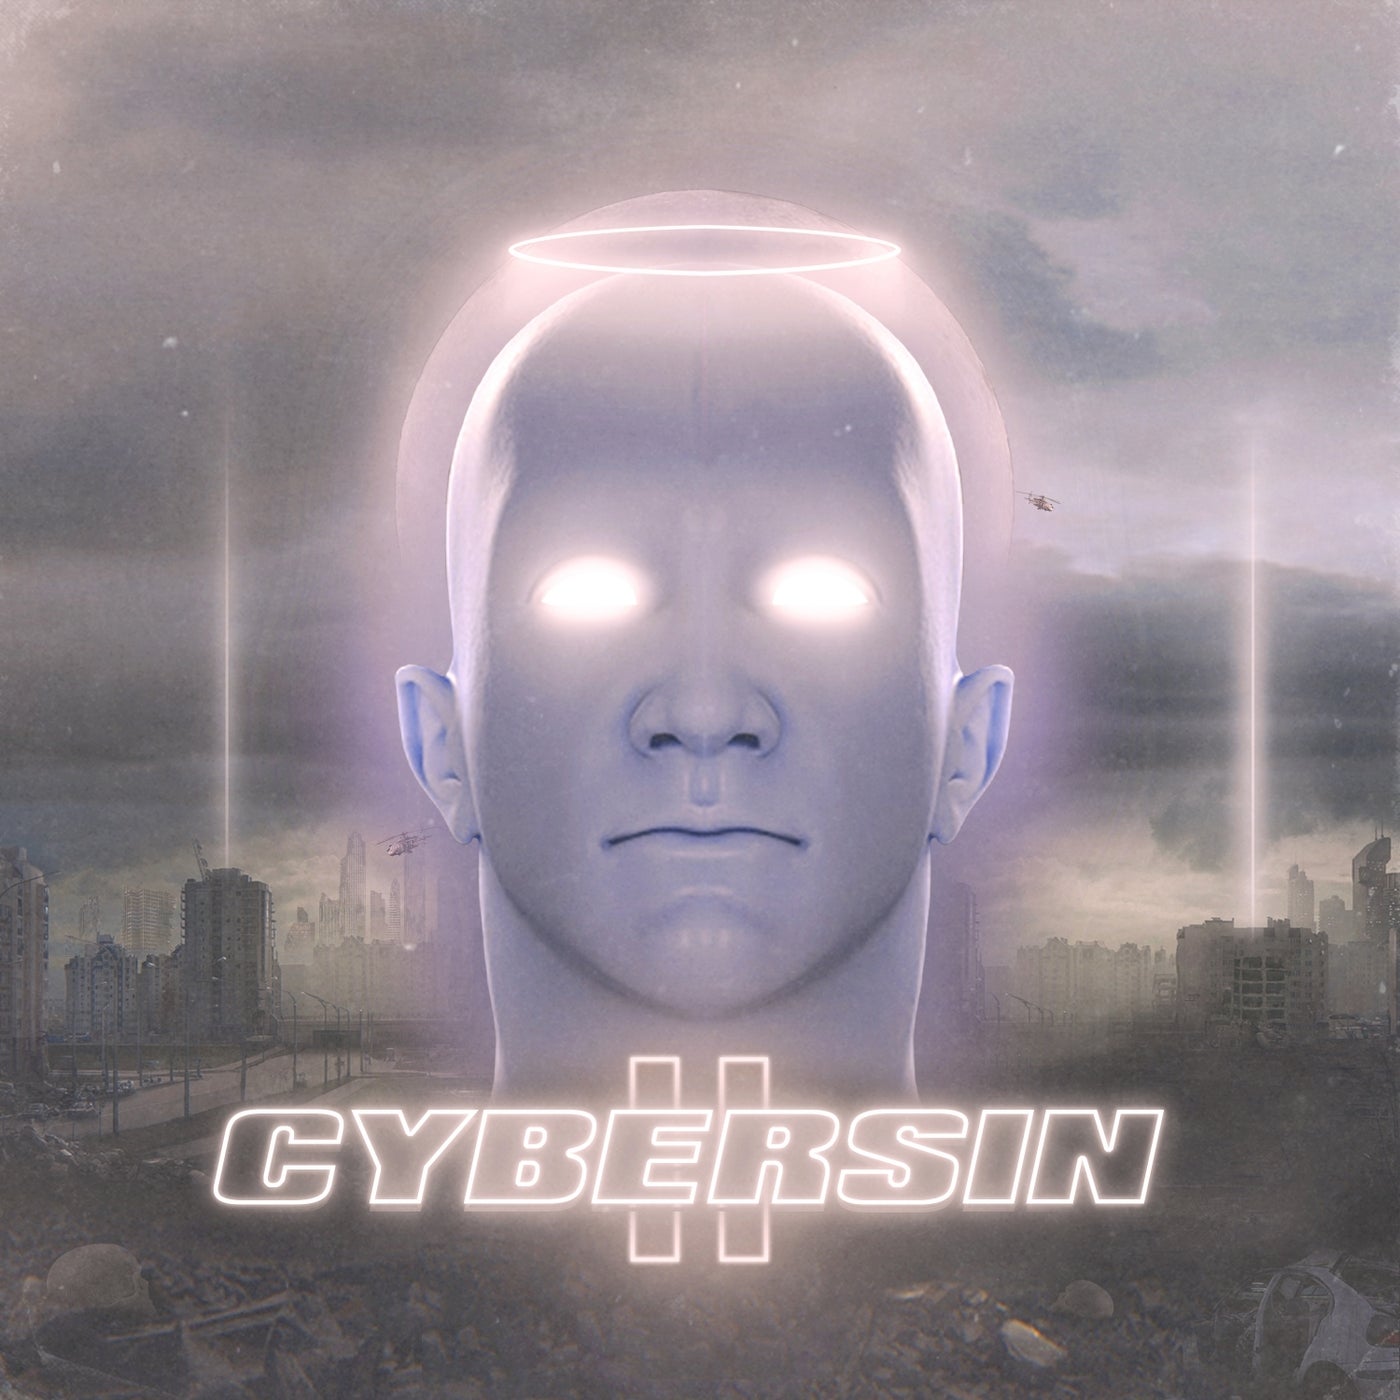 Cybersin II